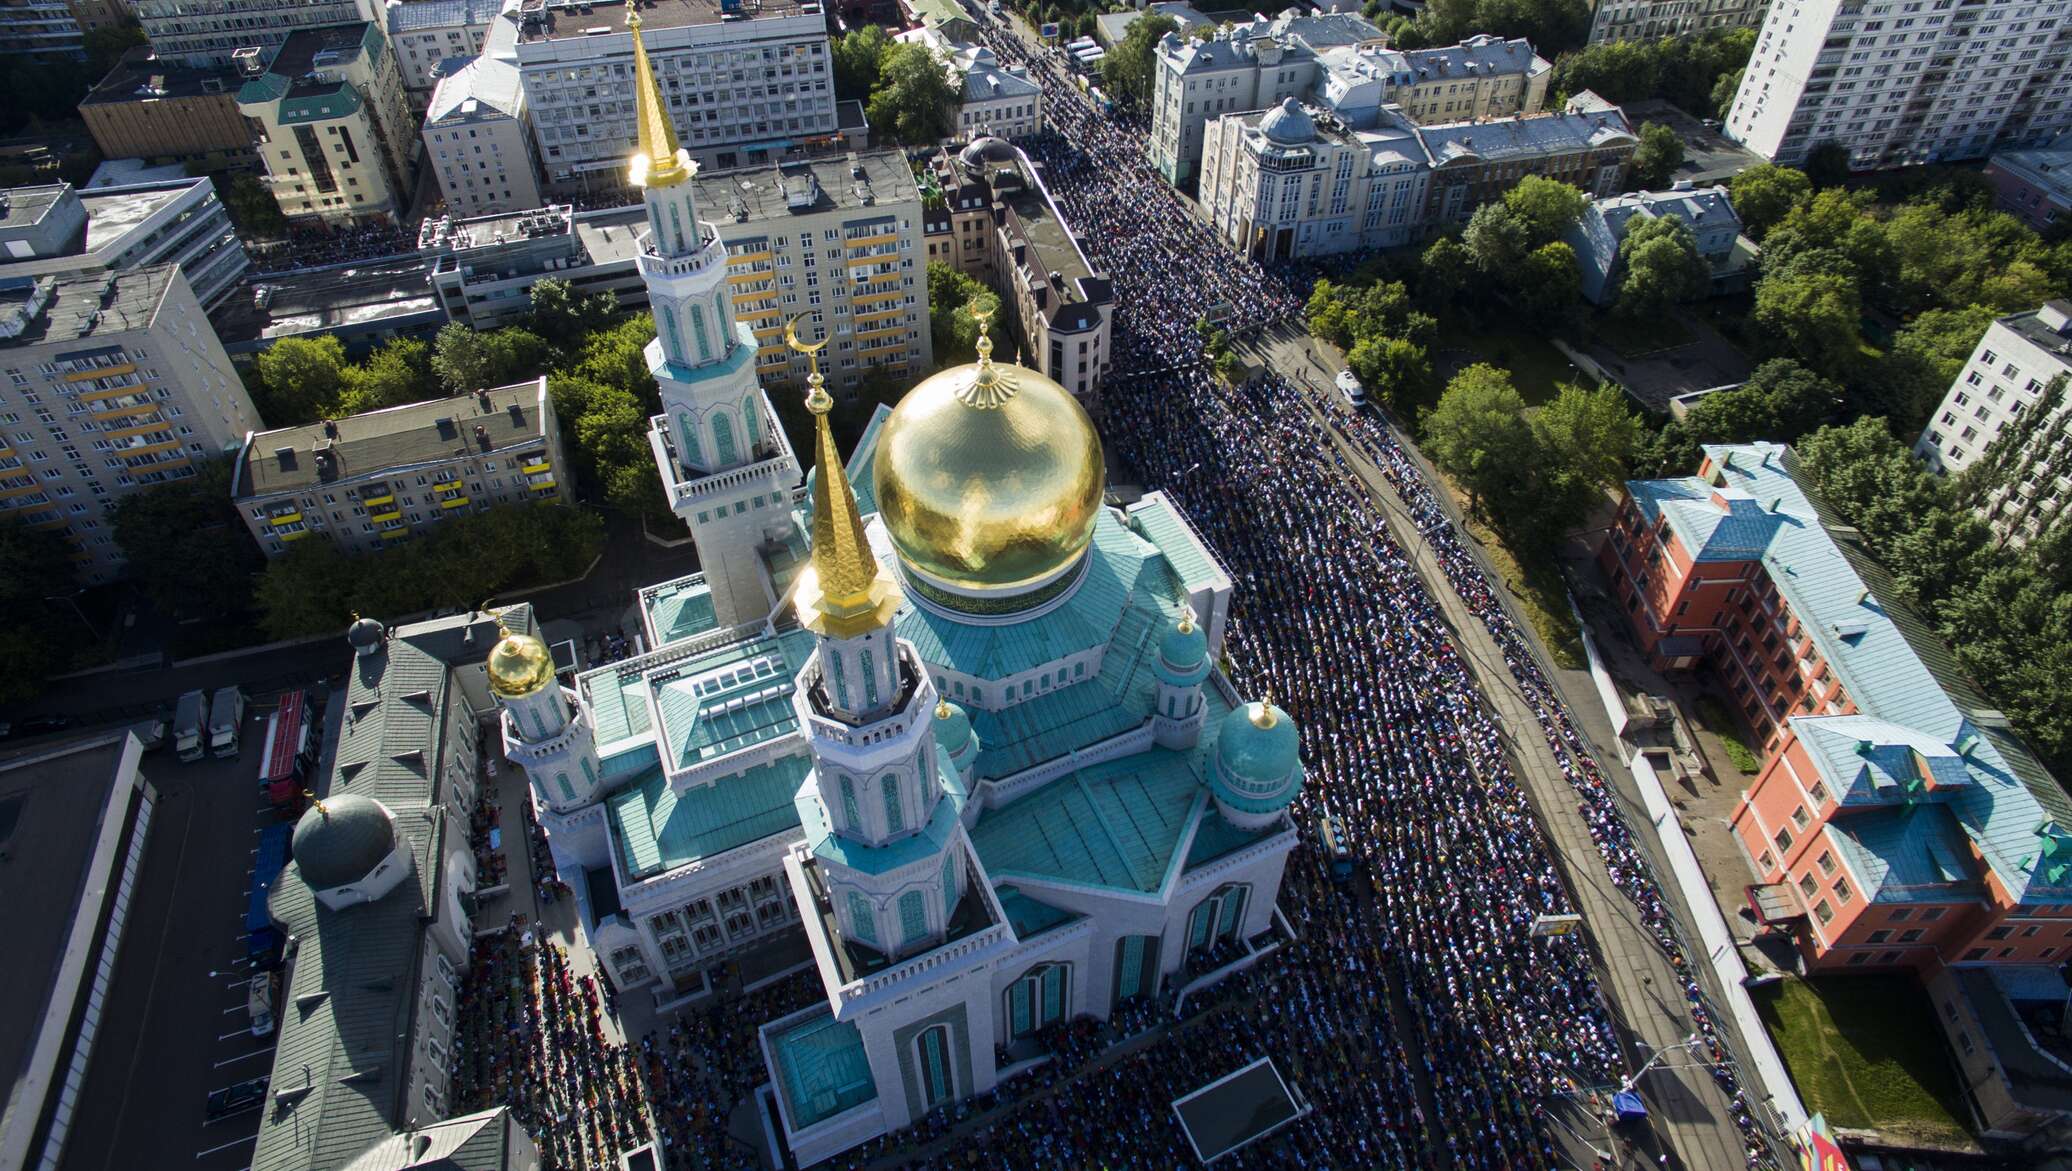 Сайт московская соборная